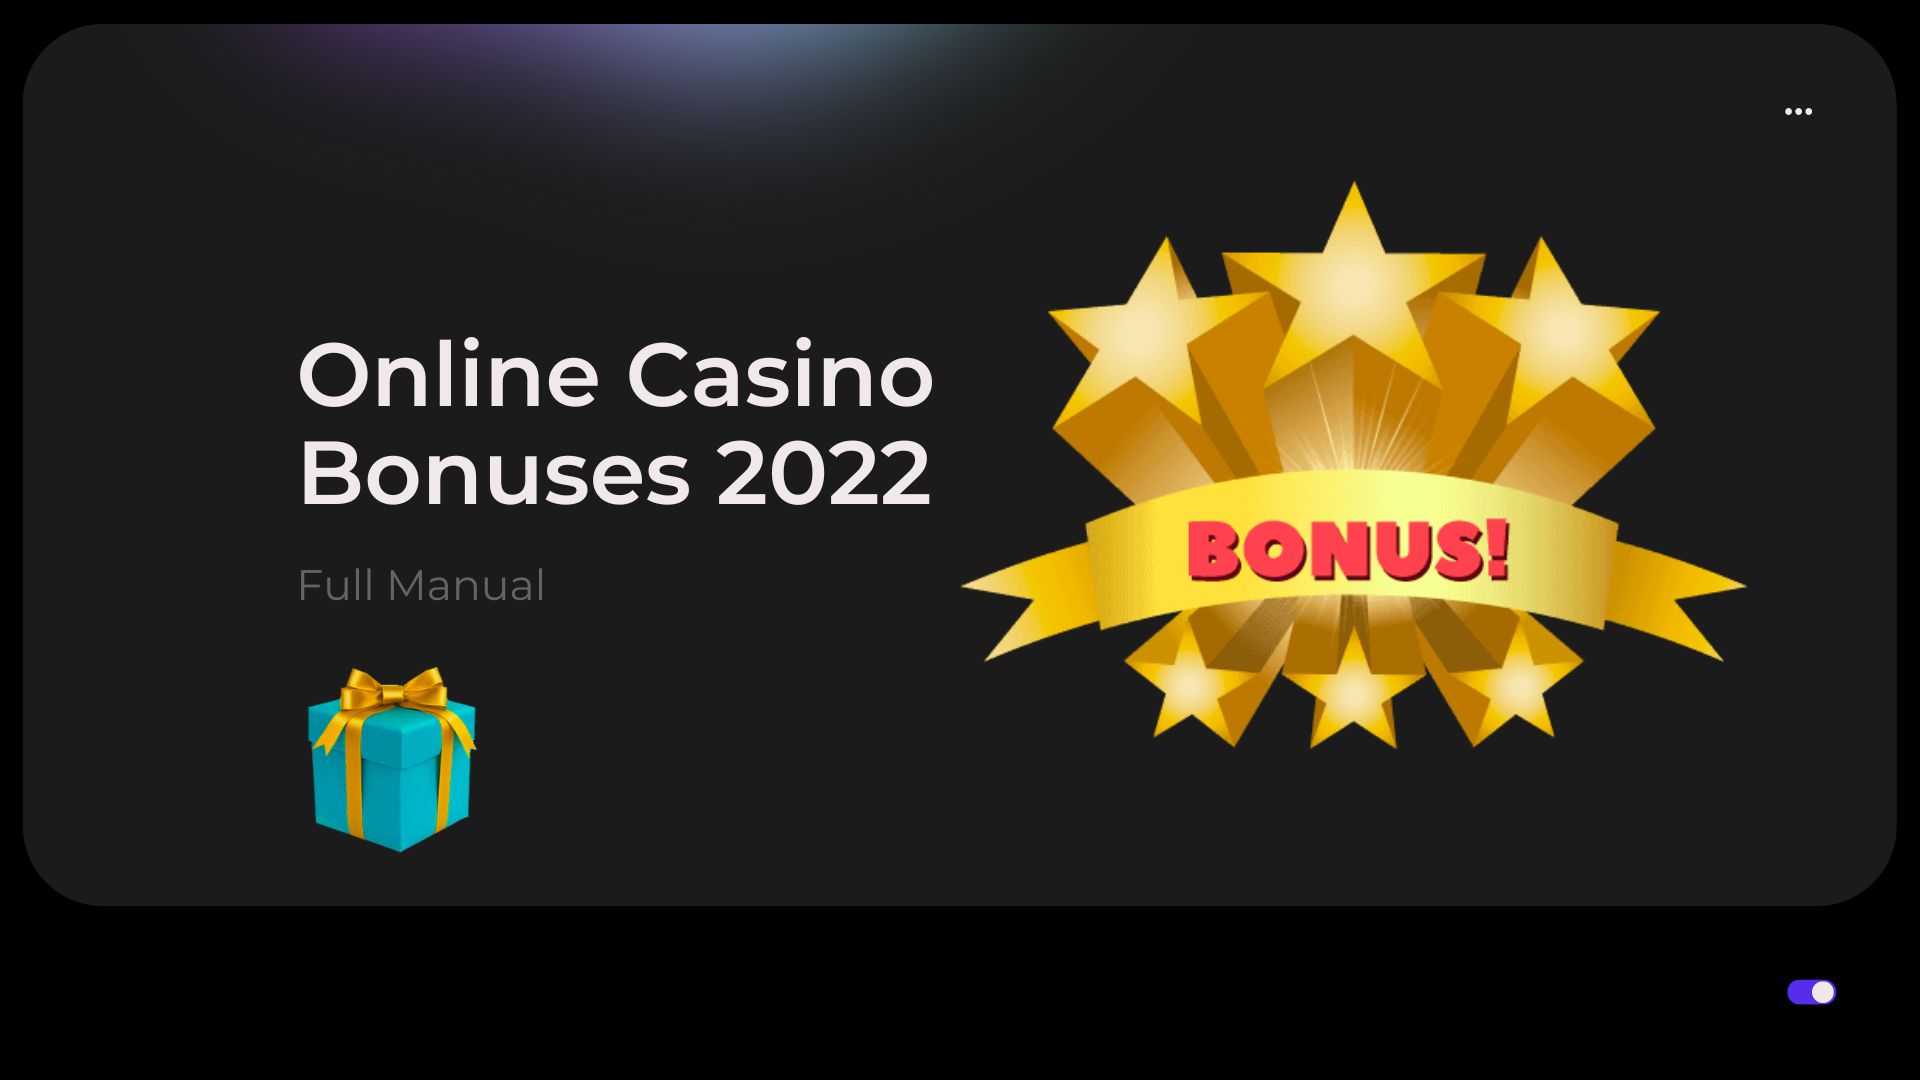 Full Manual for Online Casino Bonuses 2022